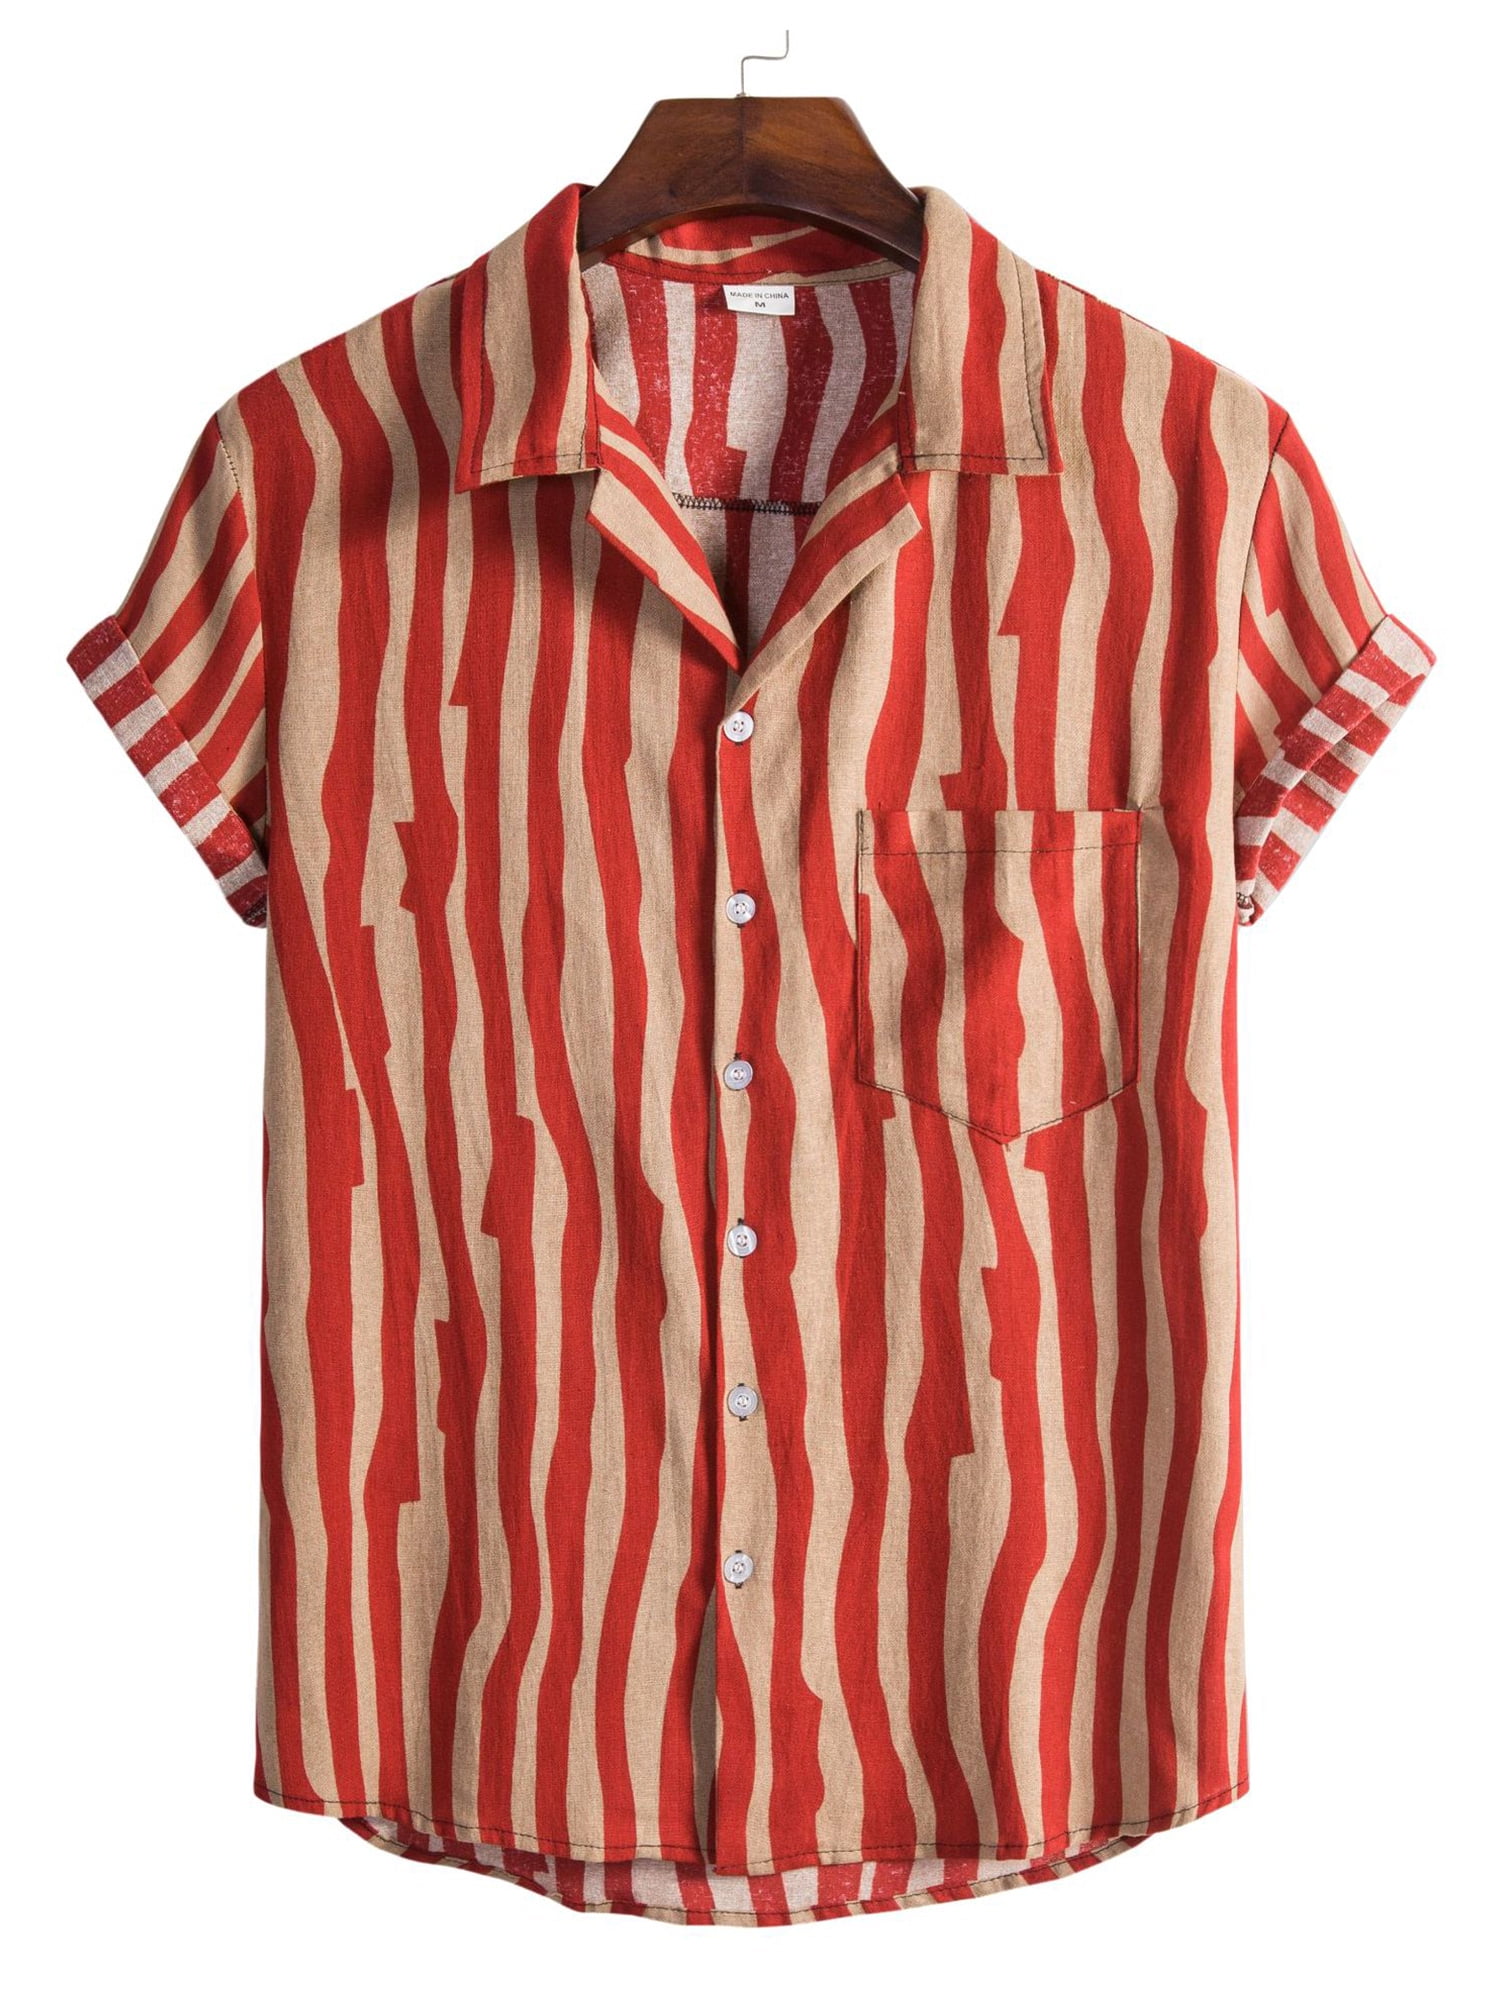 Men/'s Shirts Casual Short Sleeve Regular Fit Striped Print Button Down Shirts Cuban Collar Poplin Summer Beach Tops